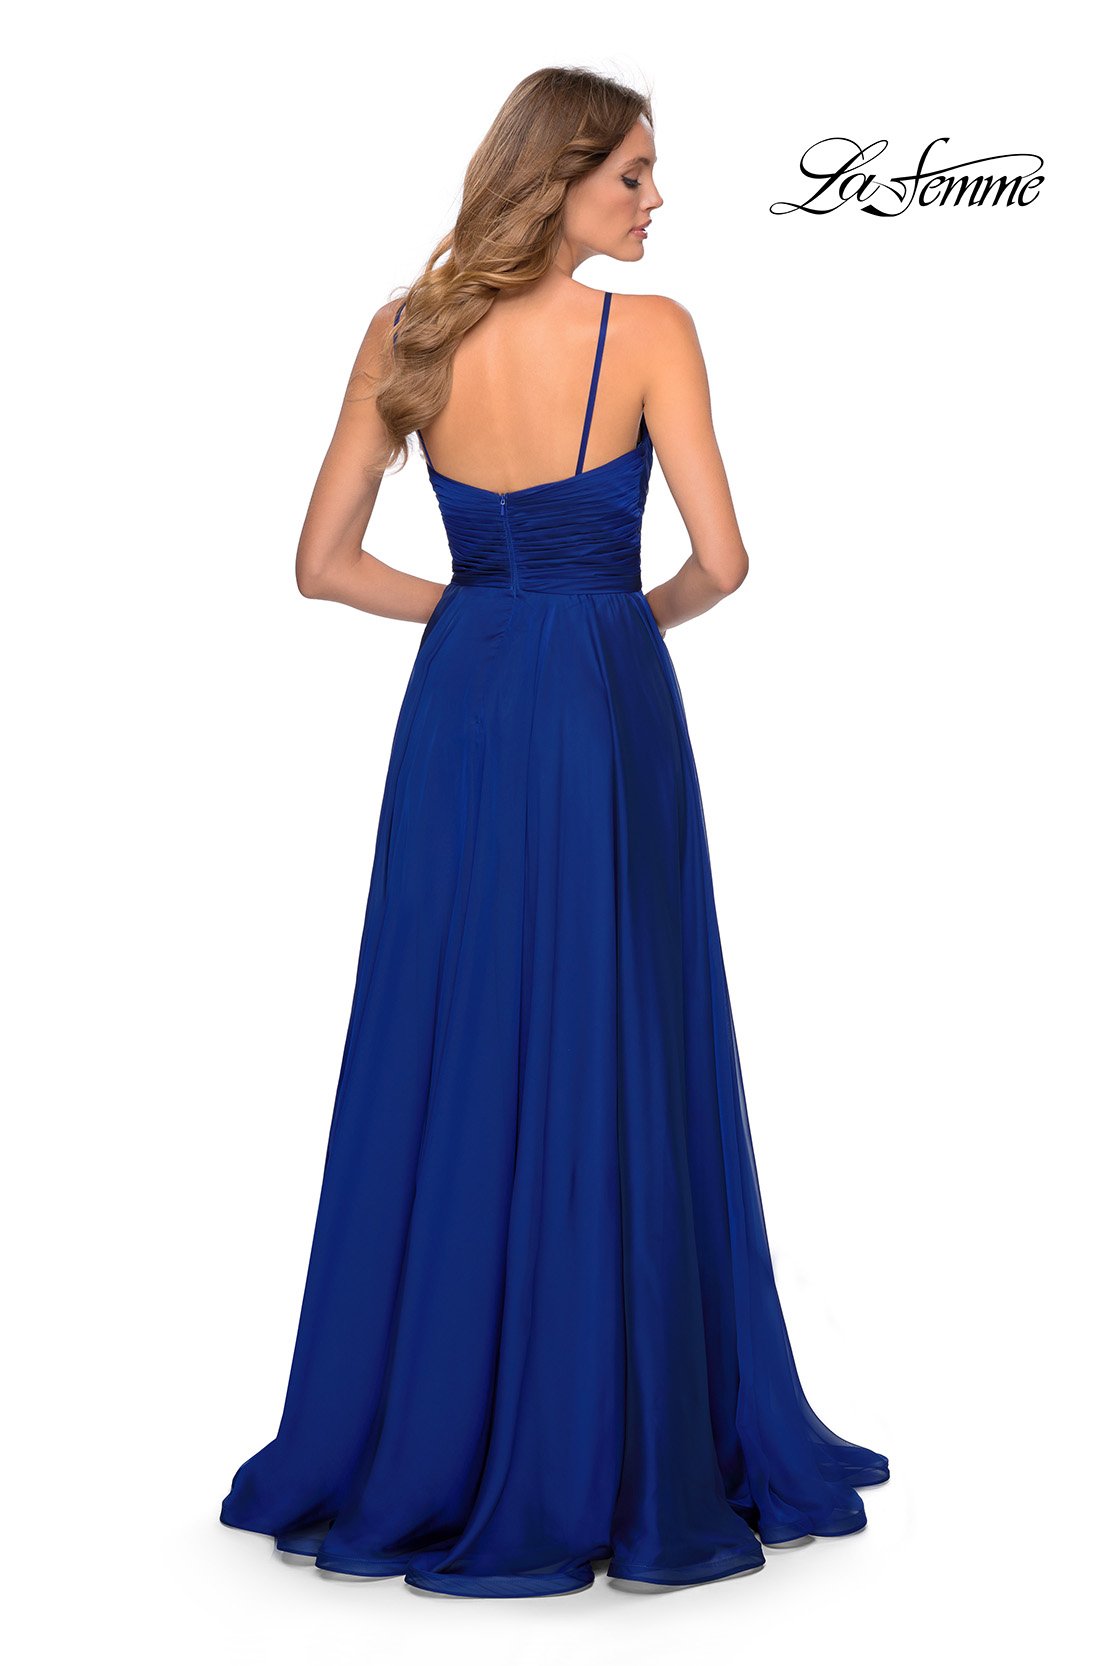 La Femme 28611 dress images in these colors: Cloud Blue, Garnet, Marine Blue, Mauve.